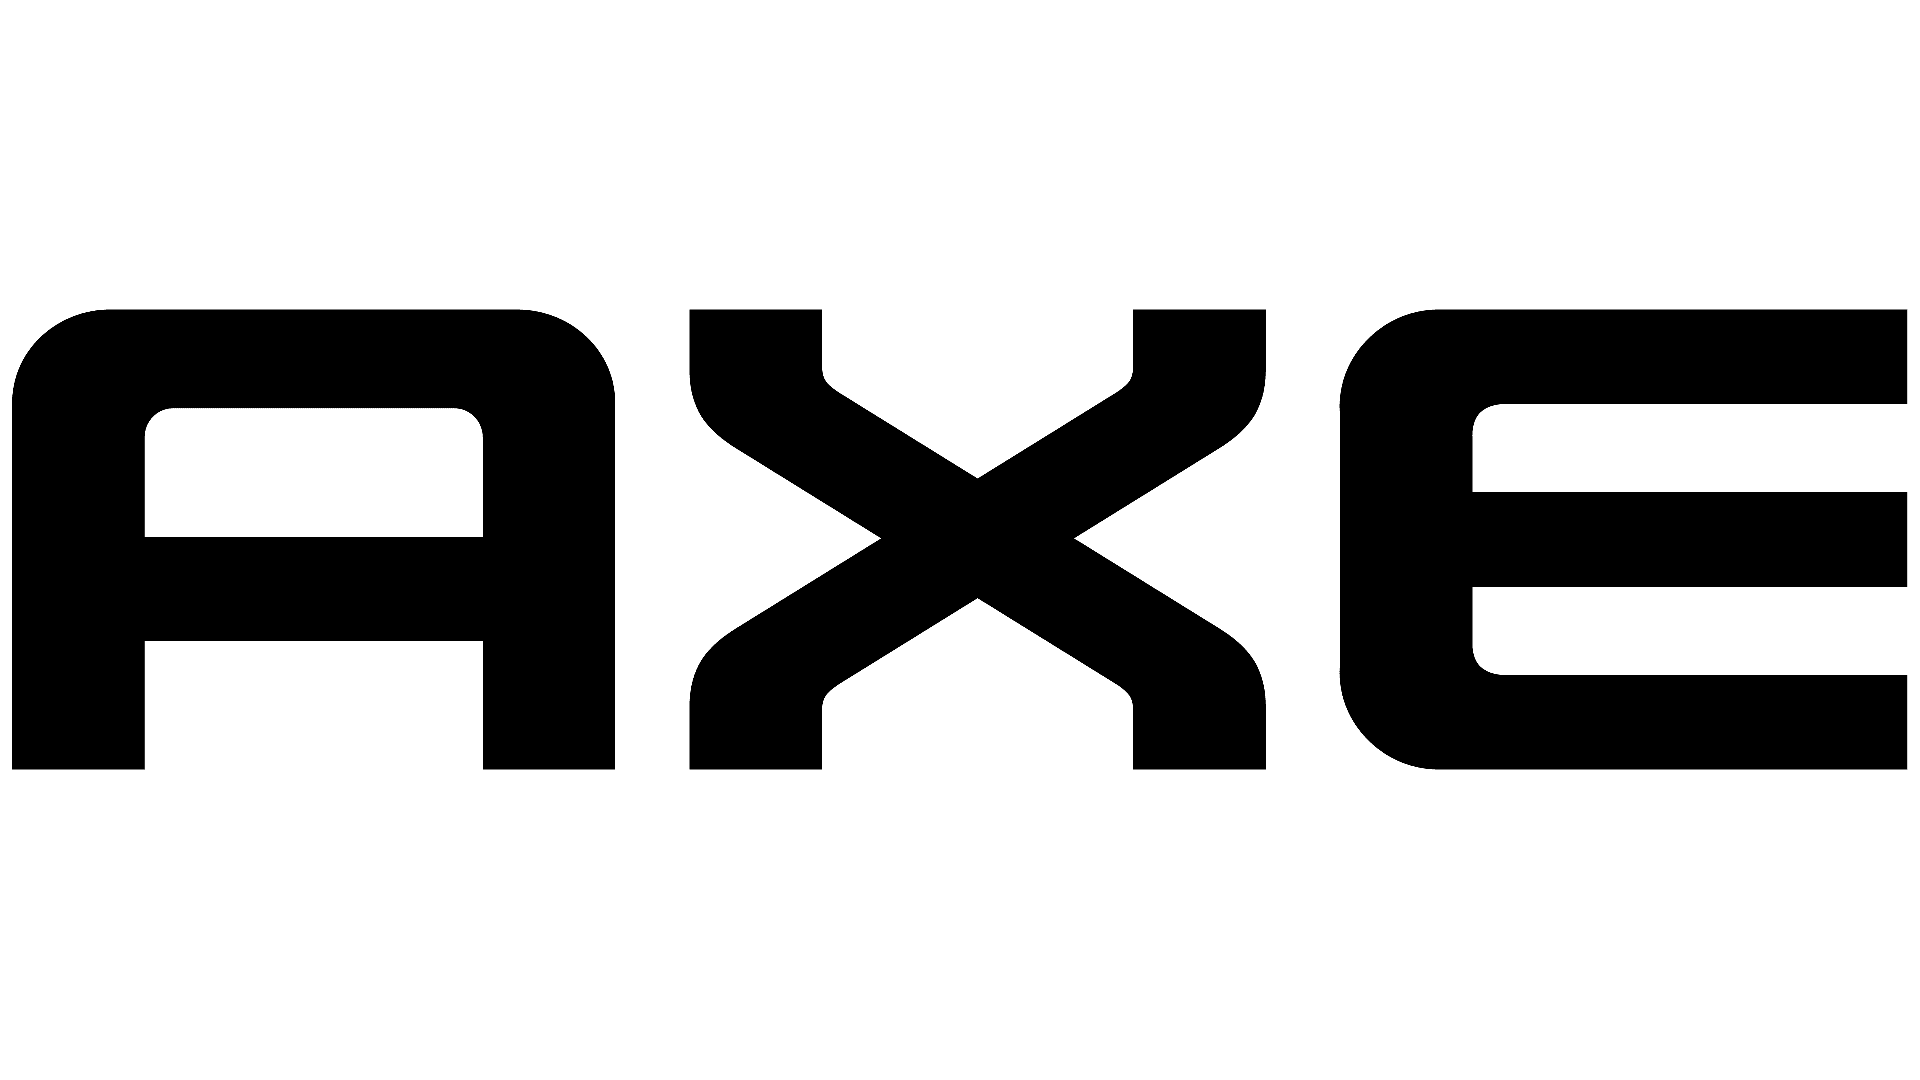 Brand: Axe